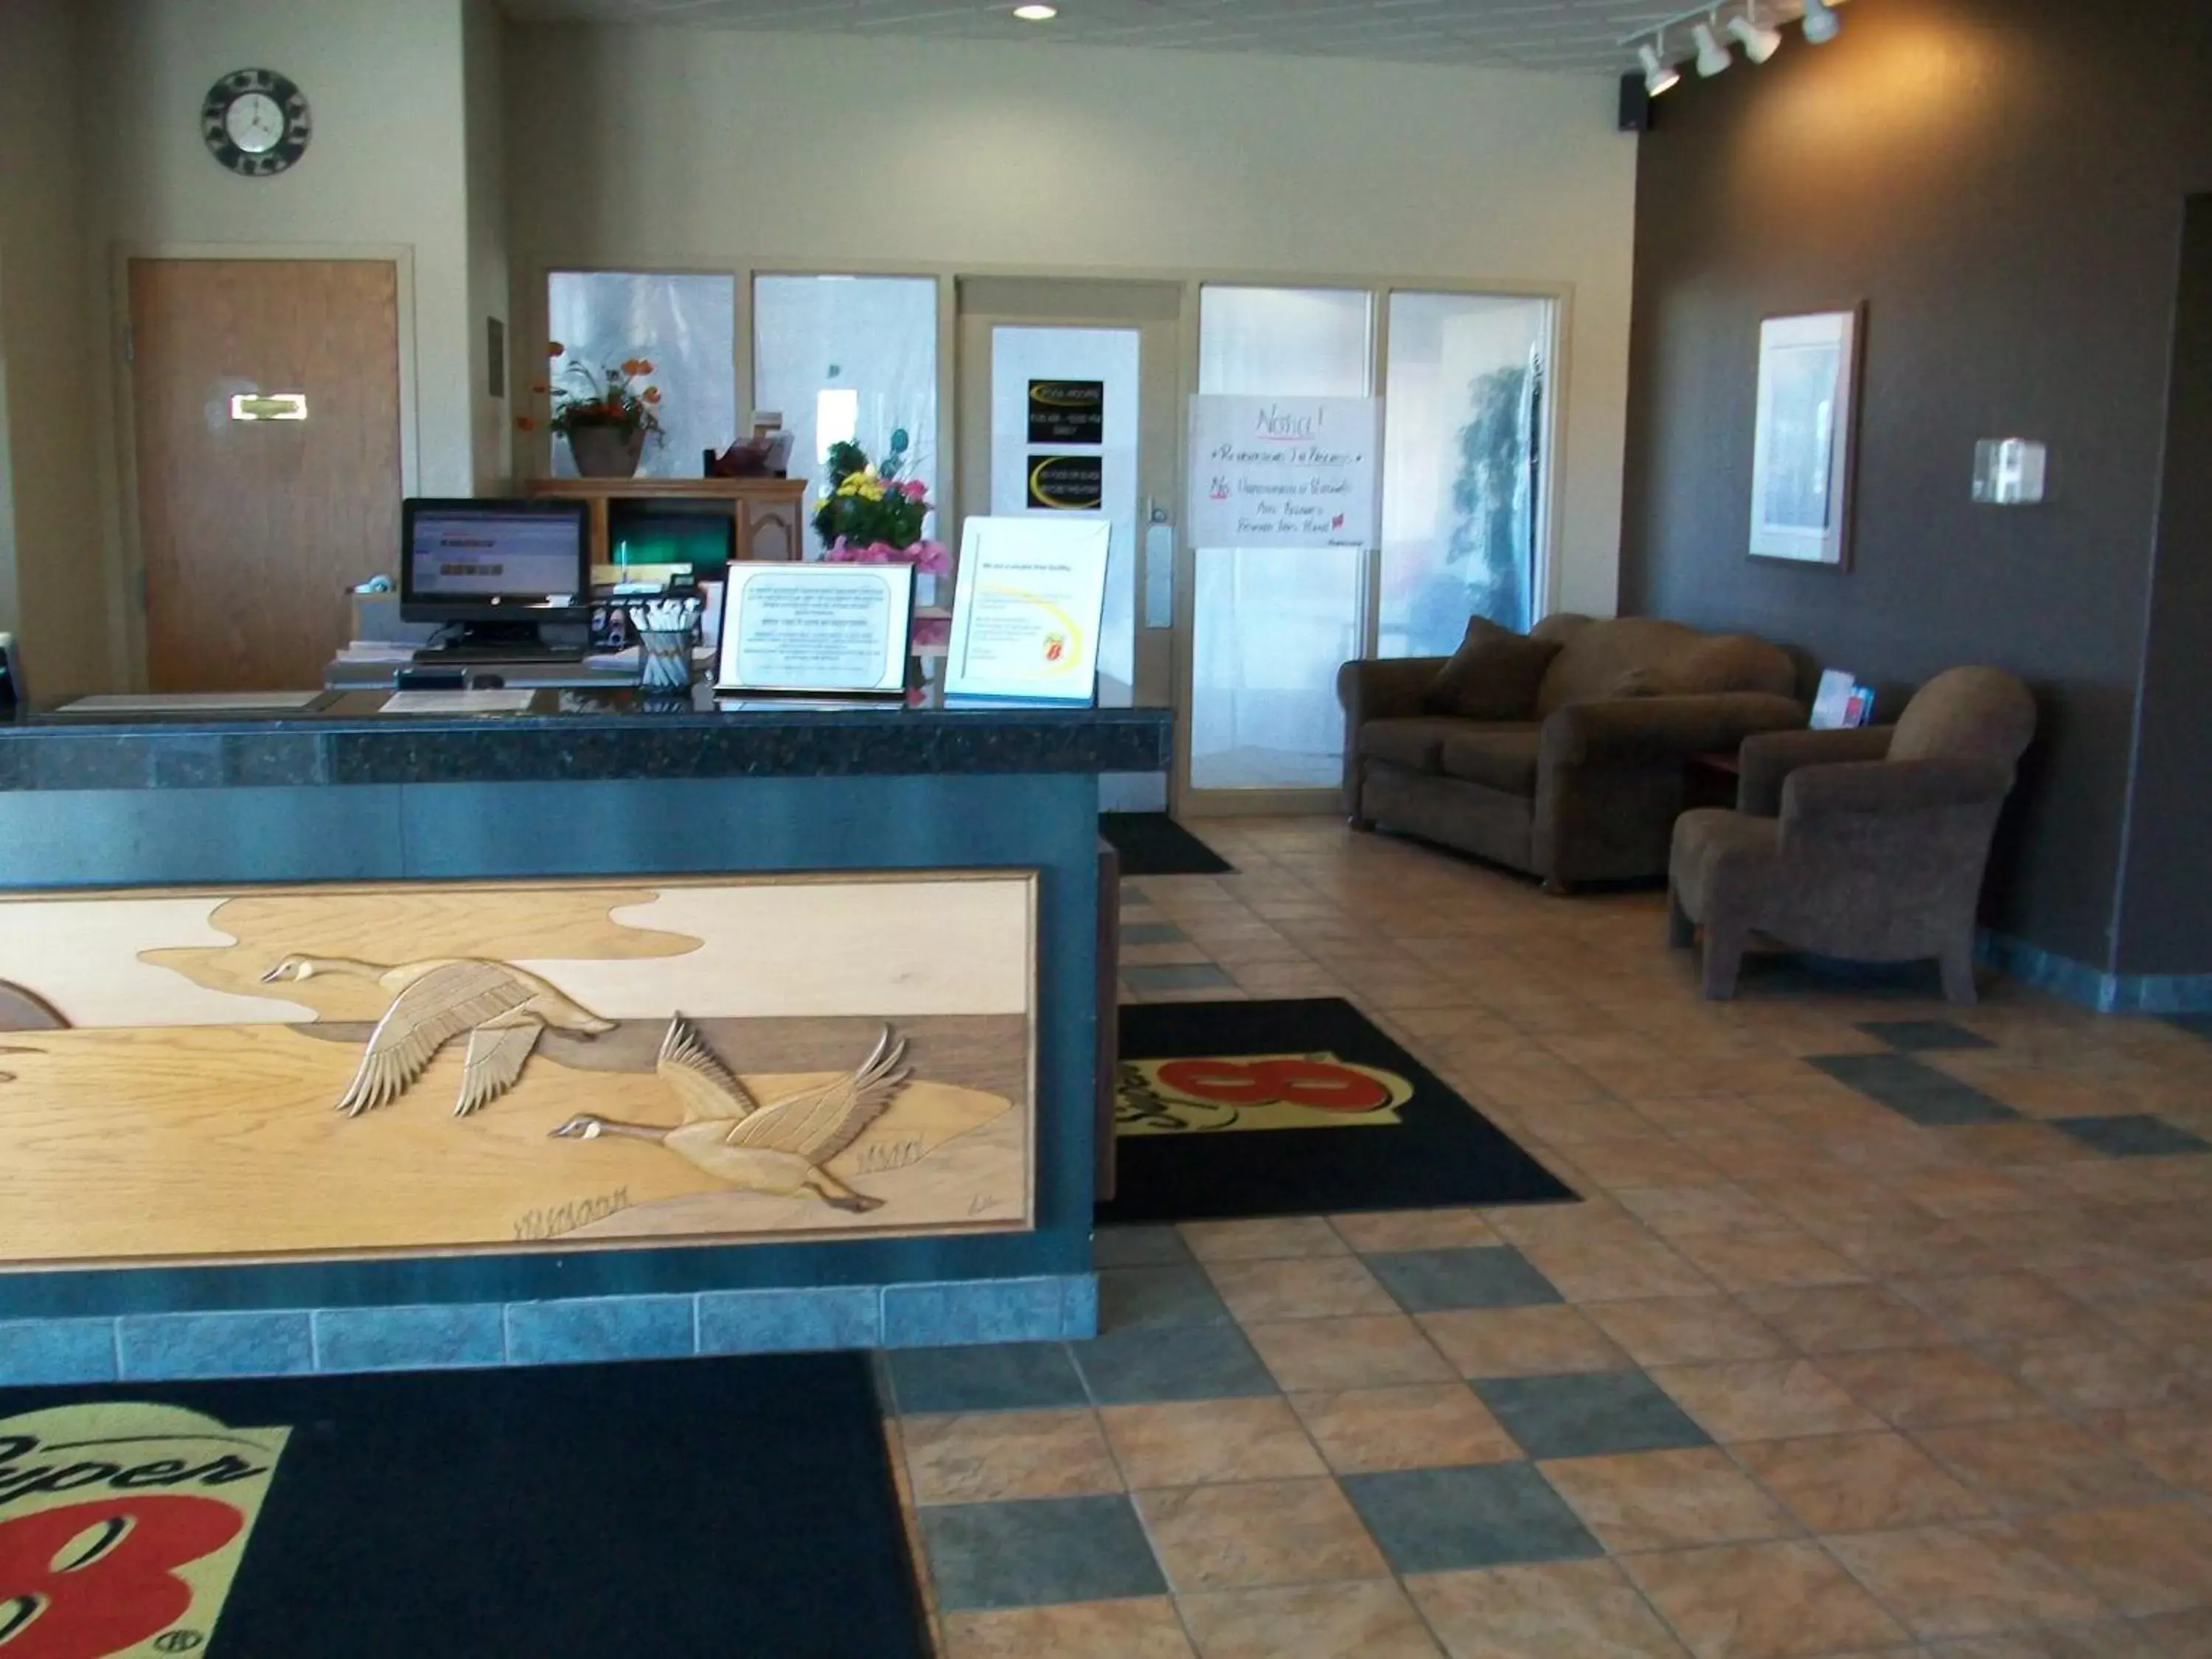 Lobby or reception, Lobby/Reception in Super 8 by Wyndham Portage La Prairie MB